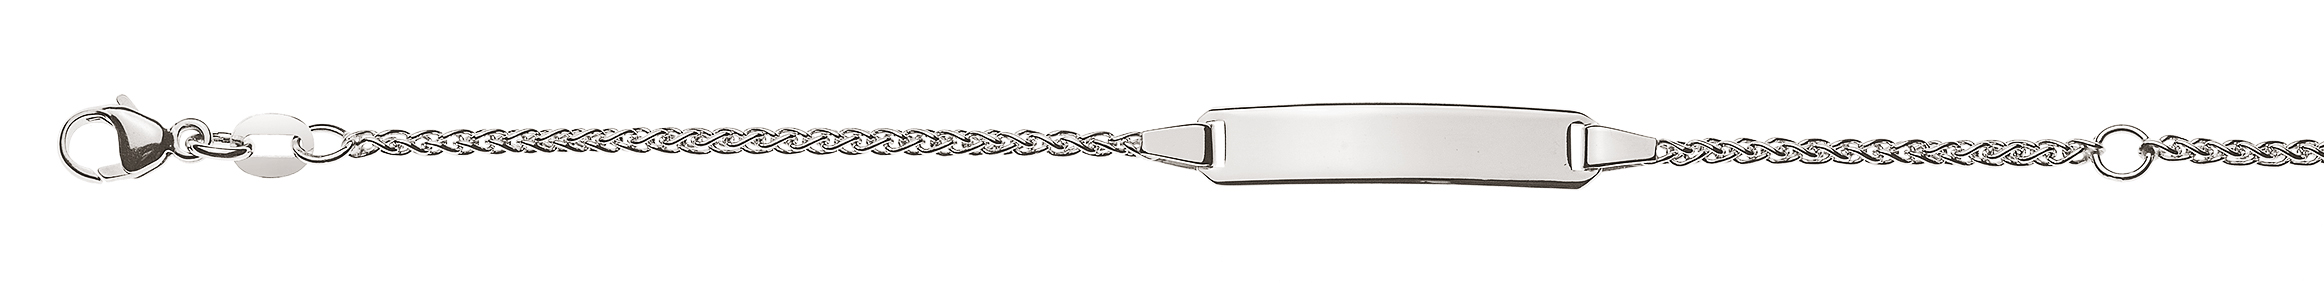 AURONOS Élégance ID-Bracelet 14k Weissgold Zopfkette 14cm